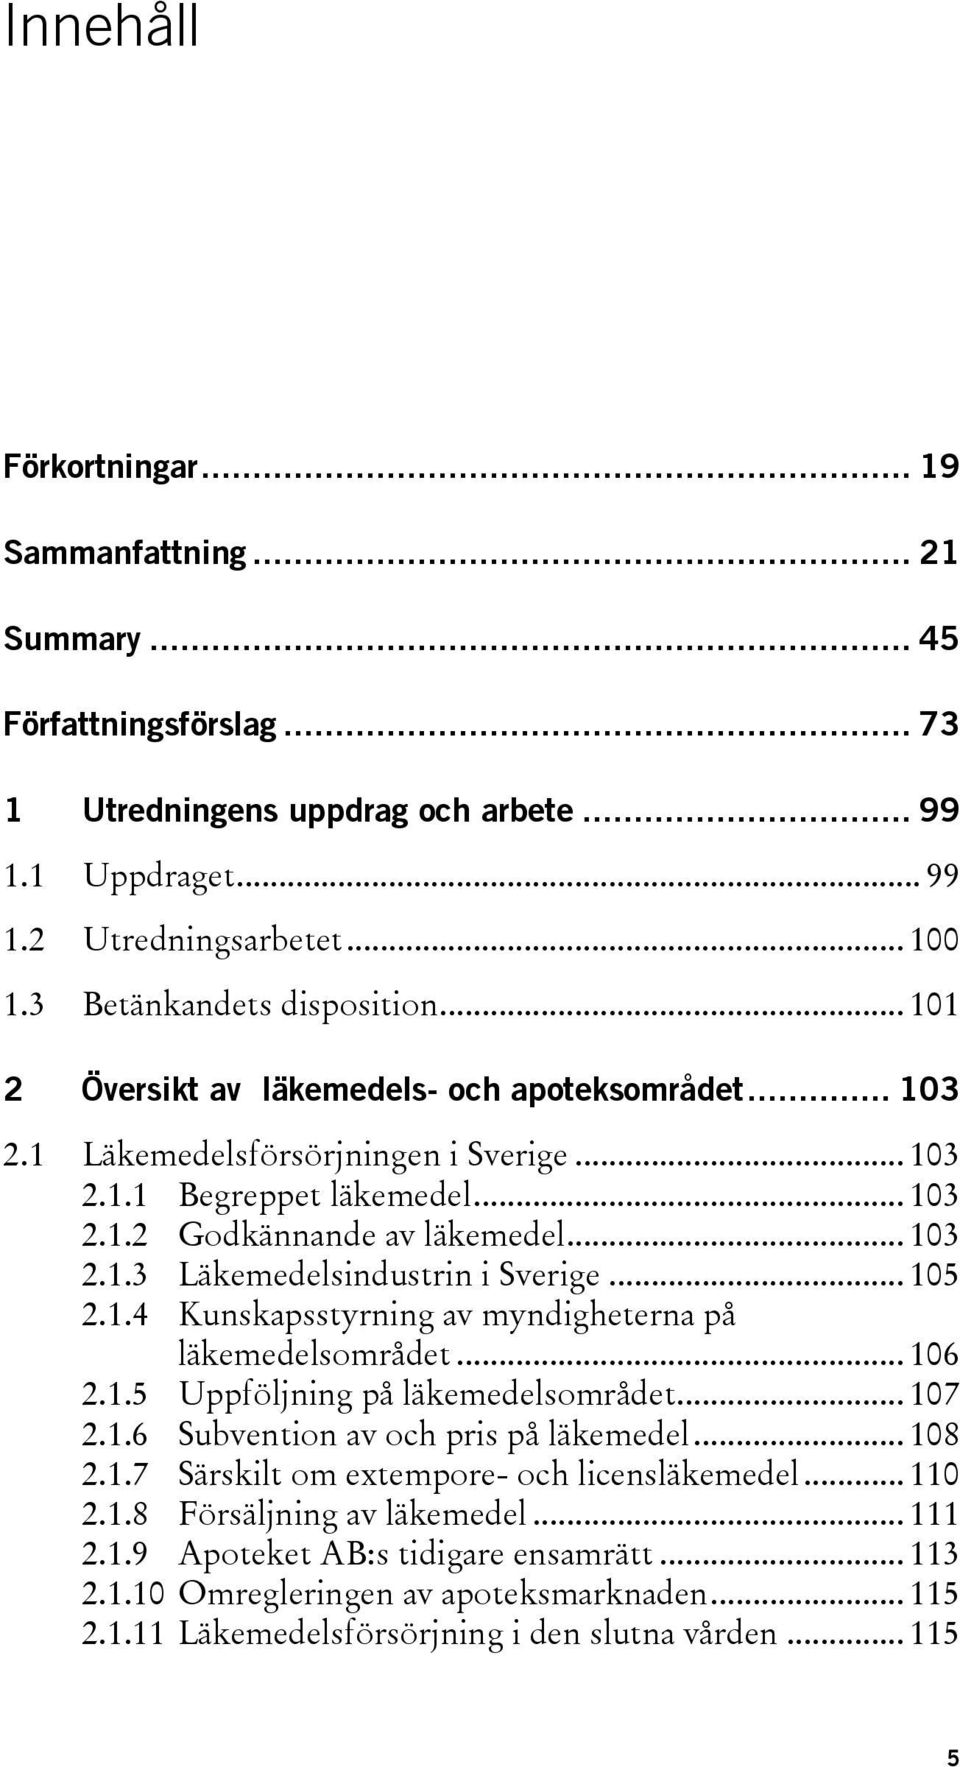 .. 103 2.1.3 Läkemedelsindustrin i Sverige... 105 2.1.4 Kunskapsstyrning av myndigheterna på läkemedelsområdet... 106 2.1.5 Uppföljning på läkemedelsområdet... 107 2.1.6 Subvention av och pris på läkemedel.